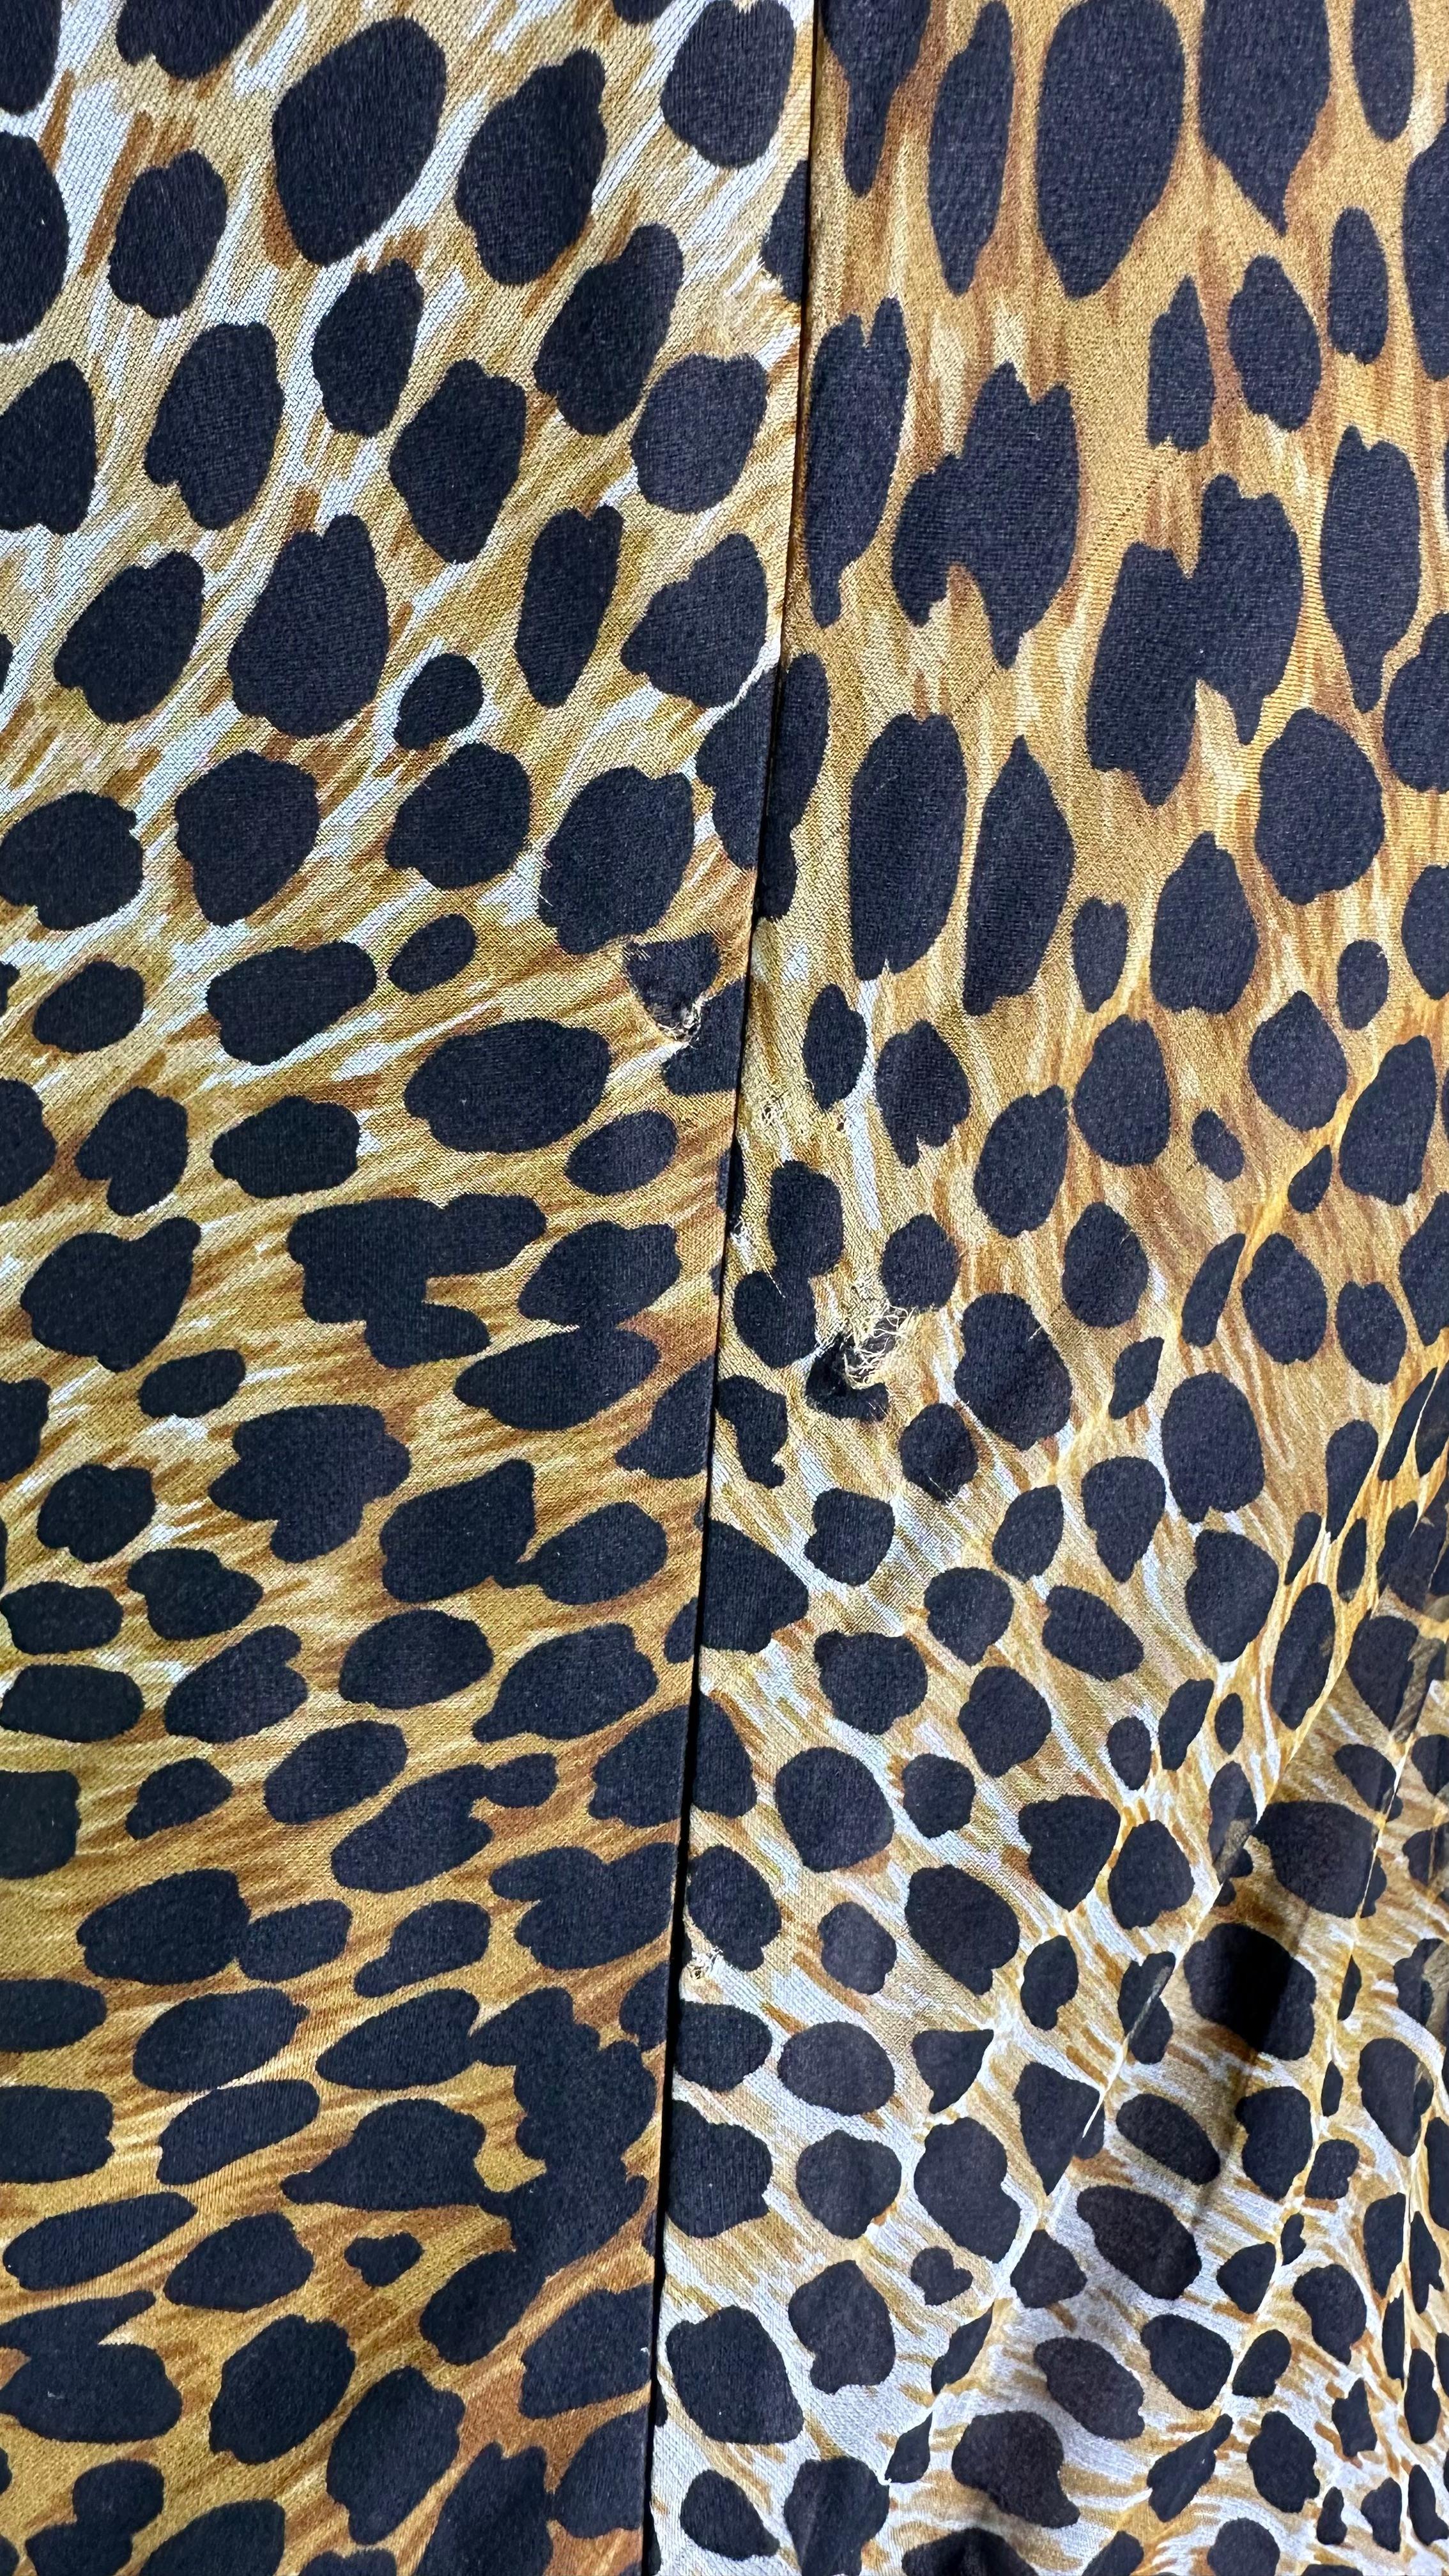 1990s Dolce & Gabbana Cheetah Print Chiffon Overlay Slip Dress For Sale 3